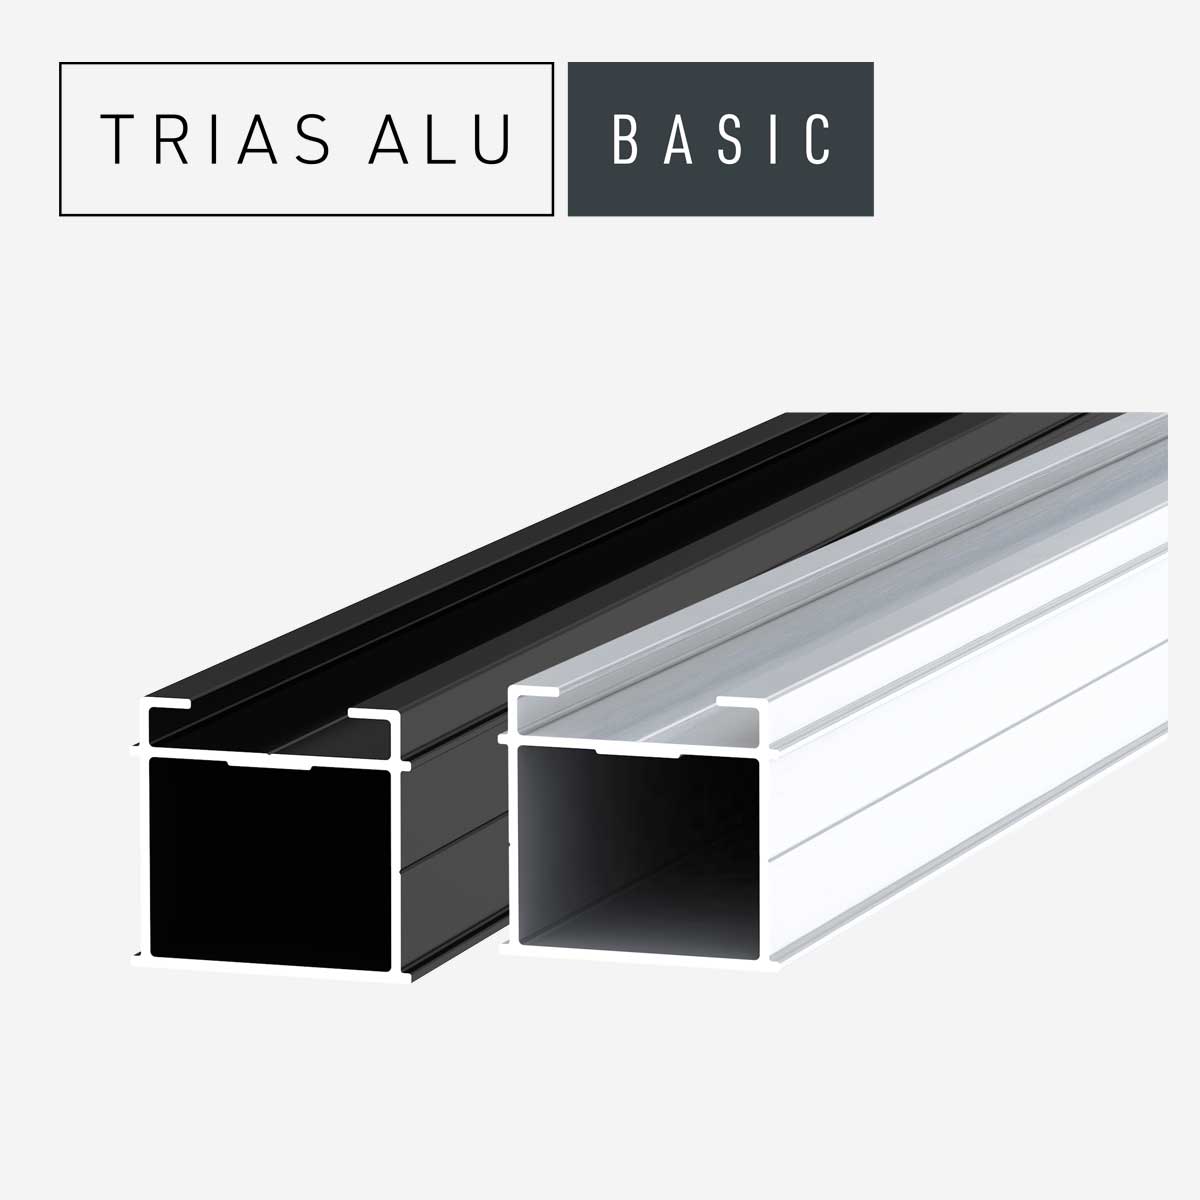 Das Bild zeigt die Terrassenprofile Basic des Systems TRIAS ALU